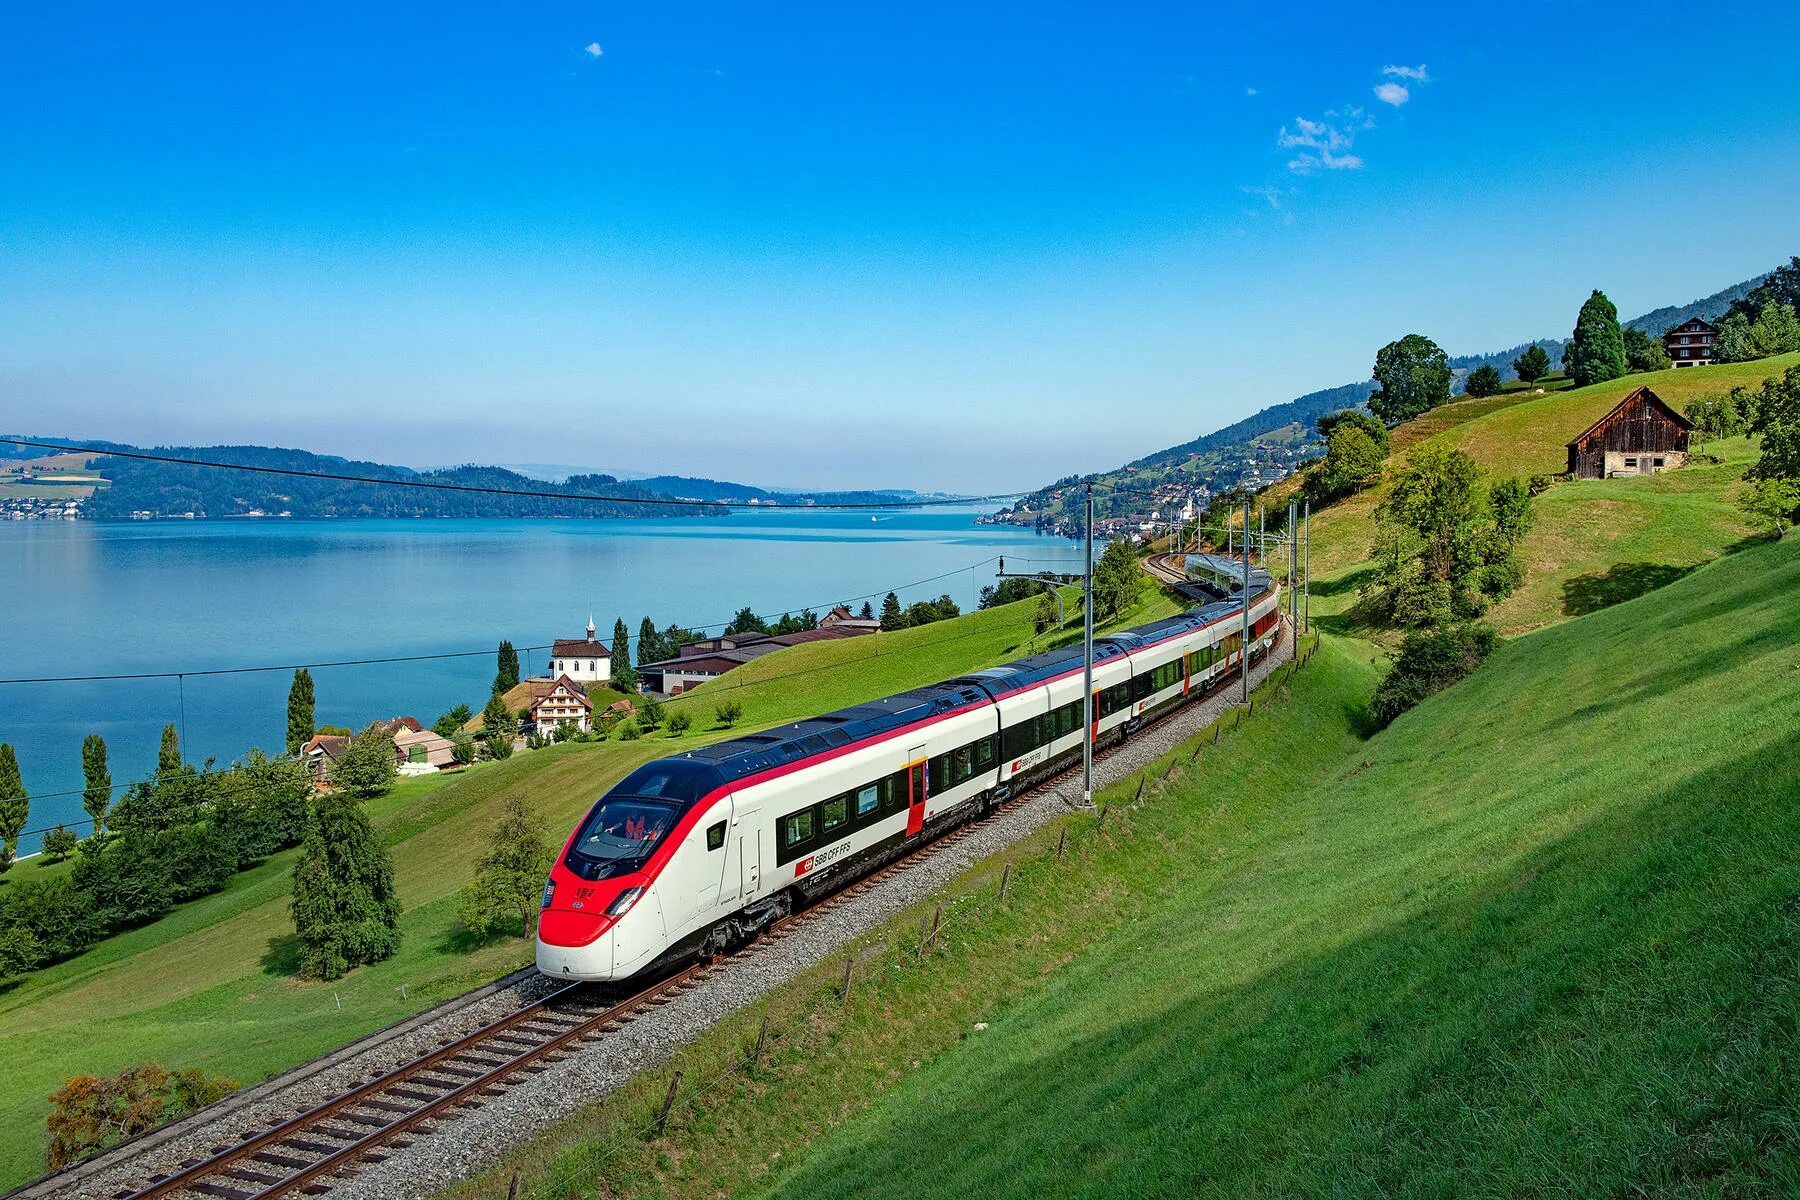 SBB Швейцария. Штадлер Швейцария поезд. Скоростные поезда Швейцарии. Железнодорожная магистраль Швейцарии. High speed railway